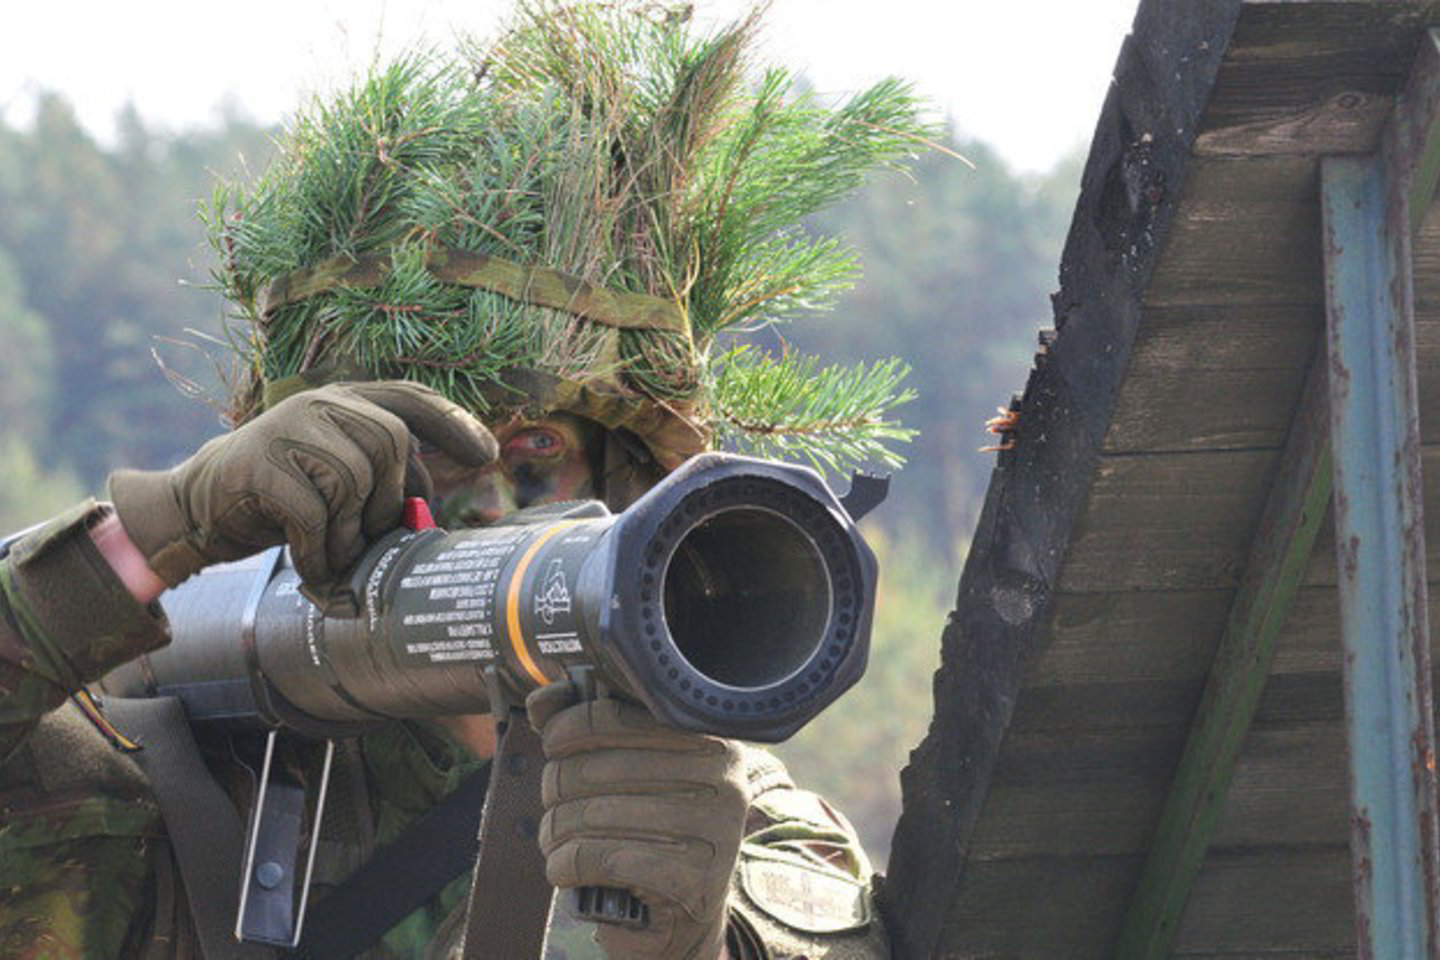 Asignavimai krašto apsaugai didinami reaguojant į Rusijos agresiją Ukrainoje.<br>A.Vaitkevičiaus nuotr.